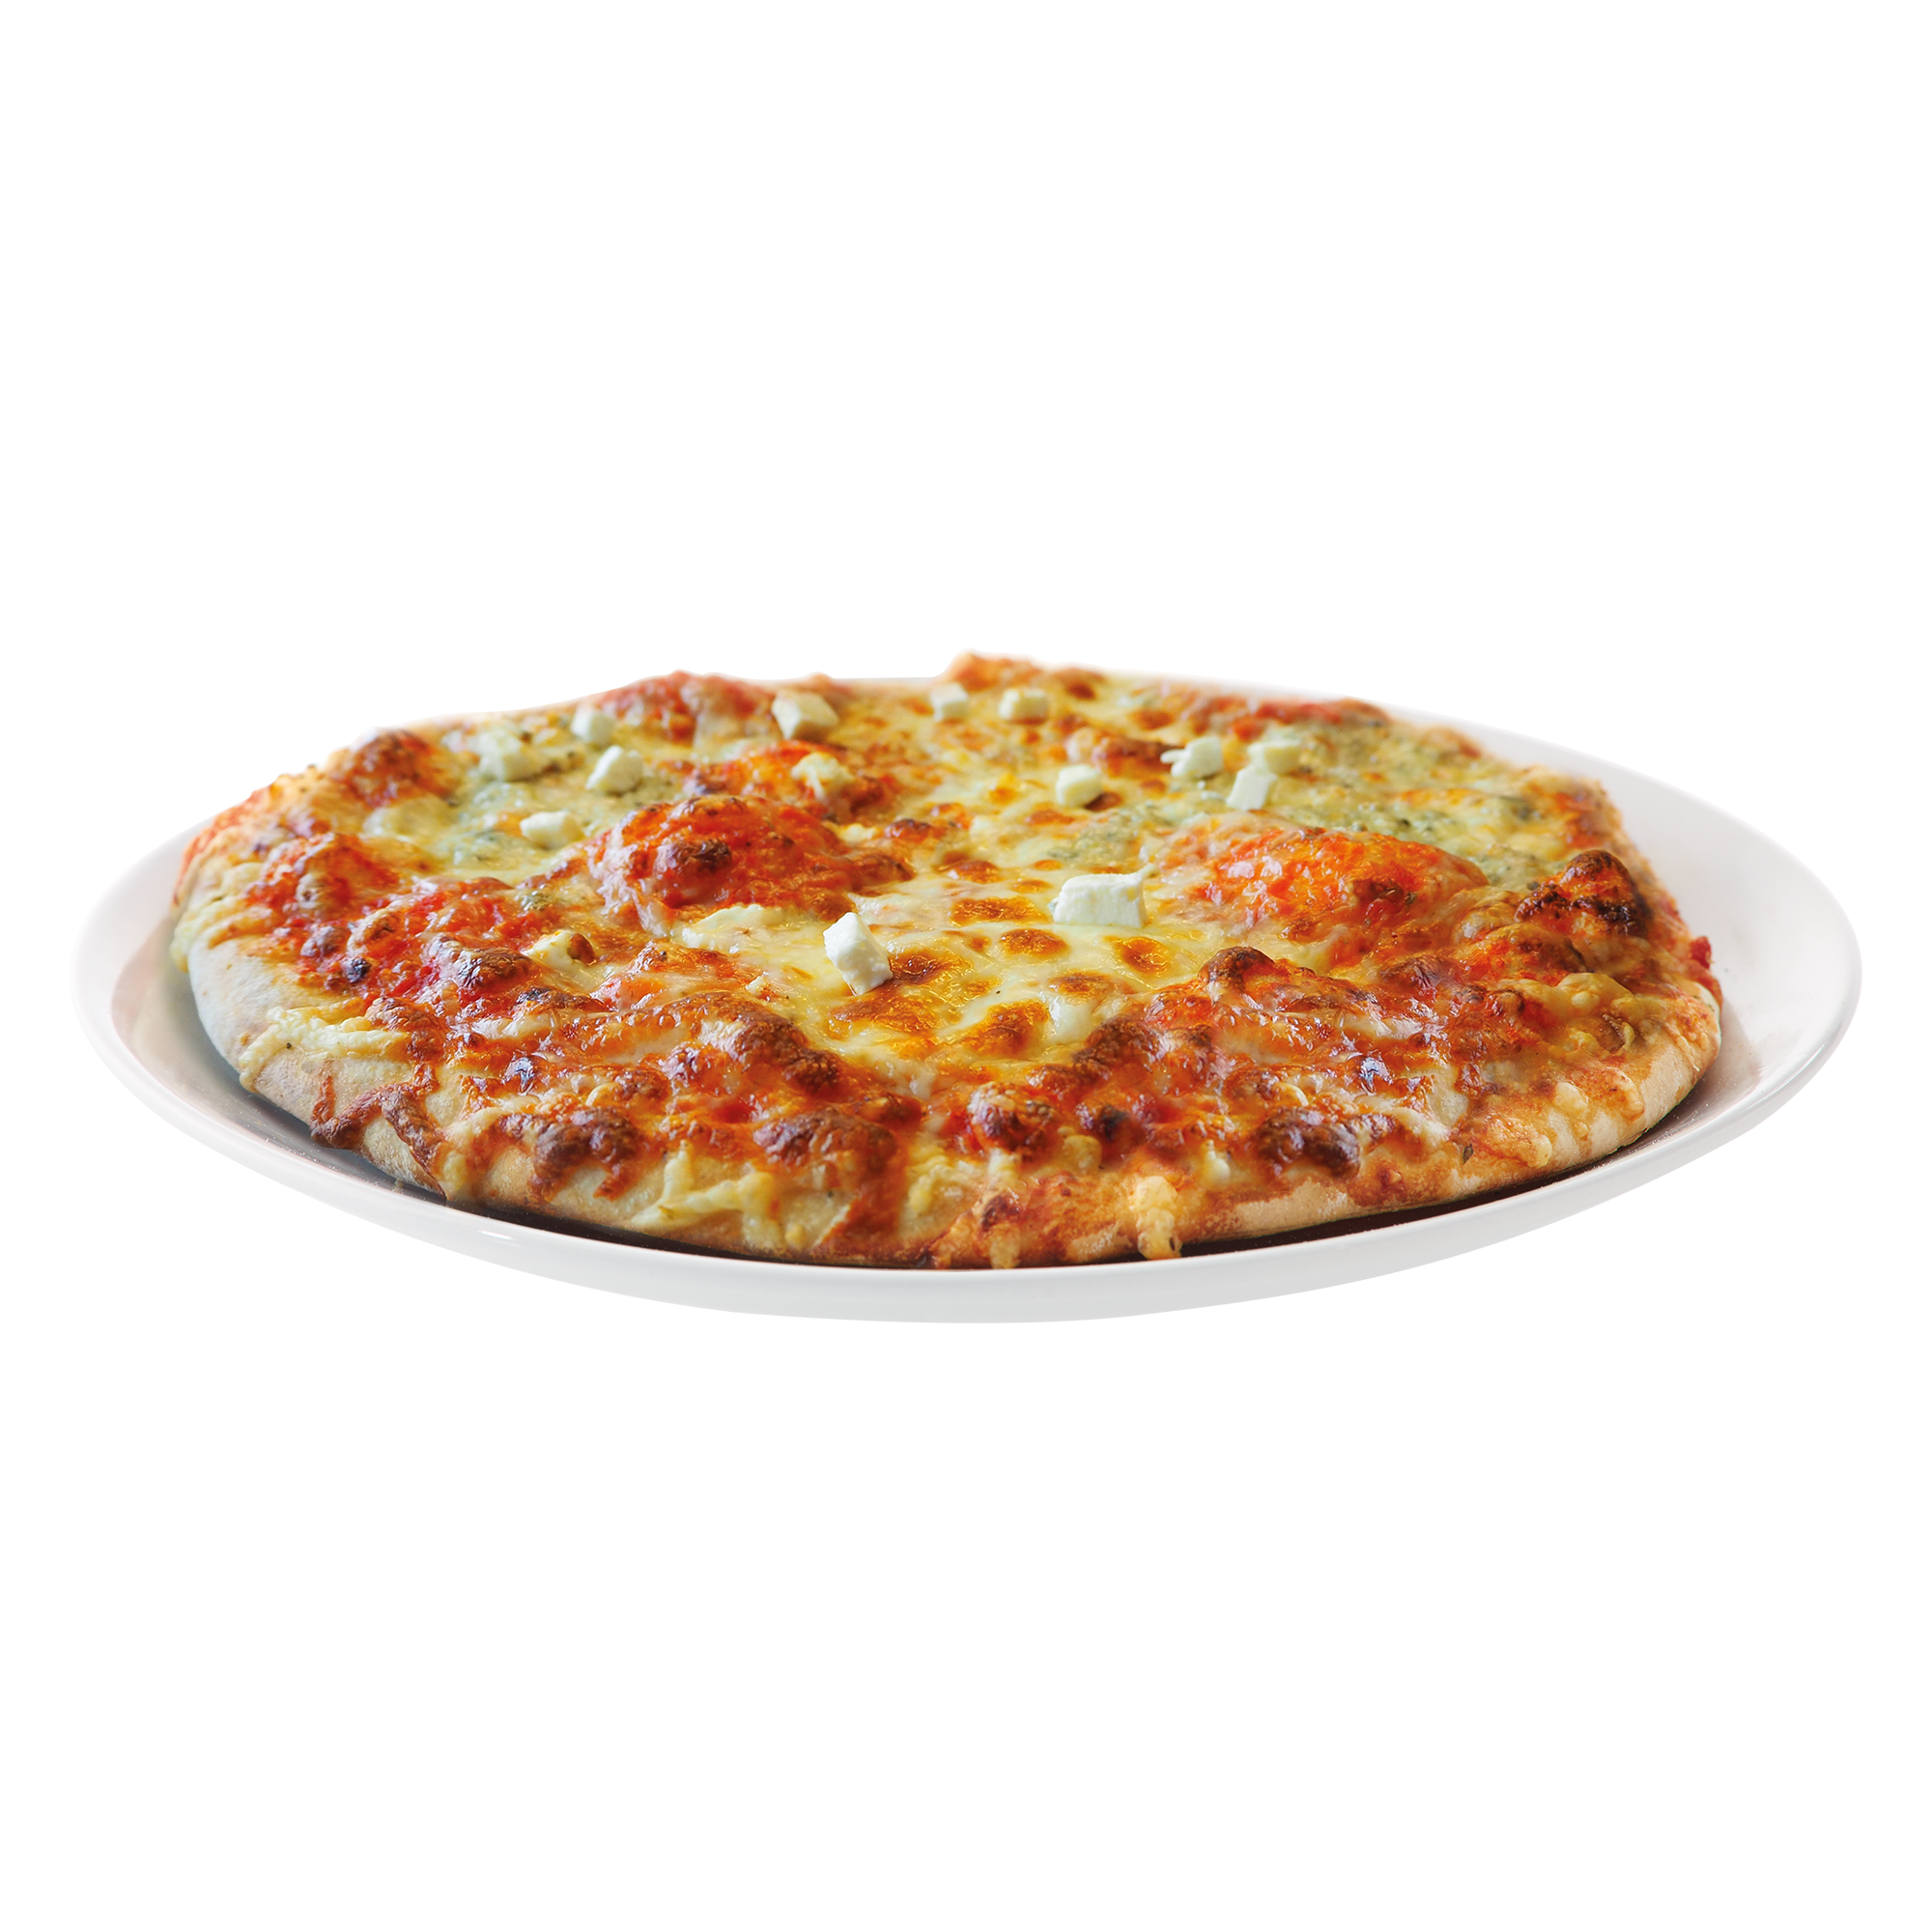 PREMIUM PIZZA “FORMAGGIO” (4-KÄSE) 480G